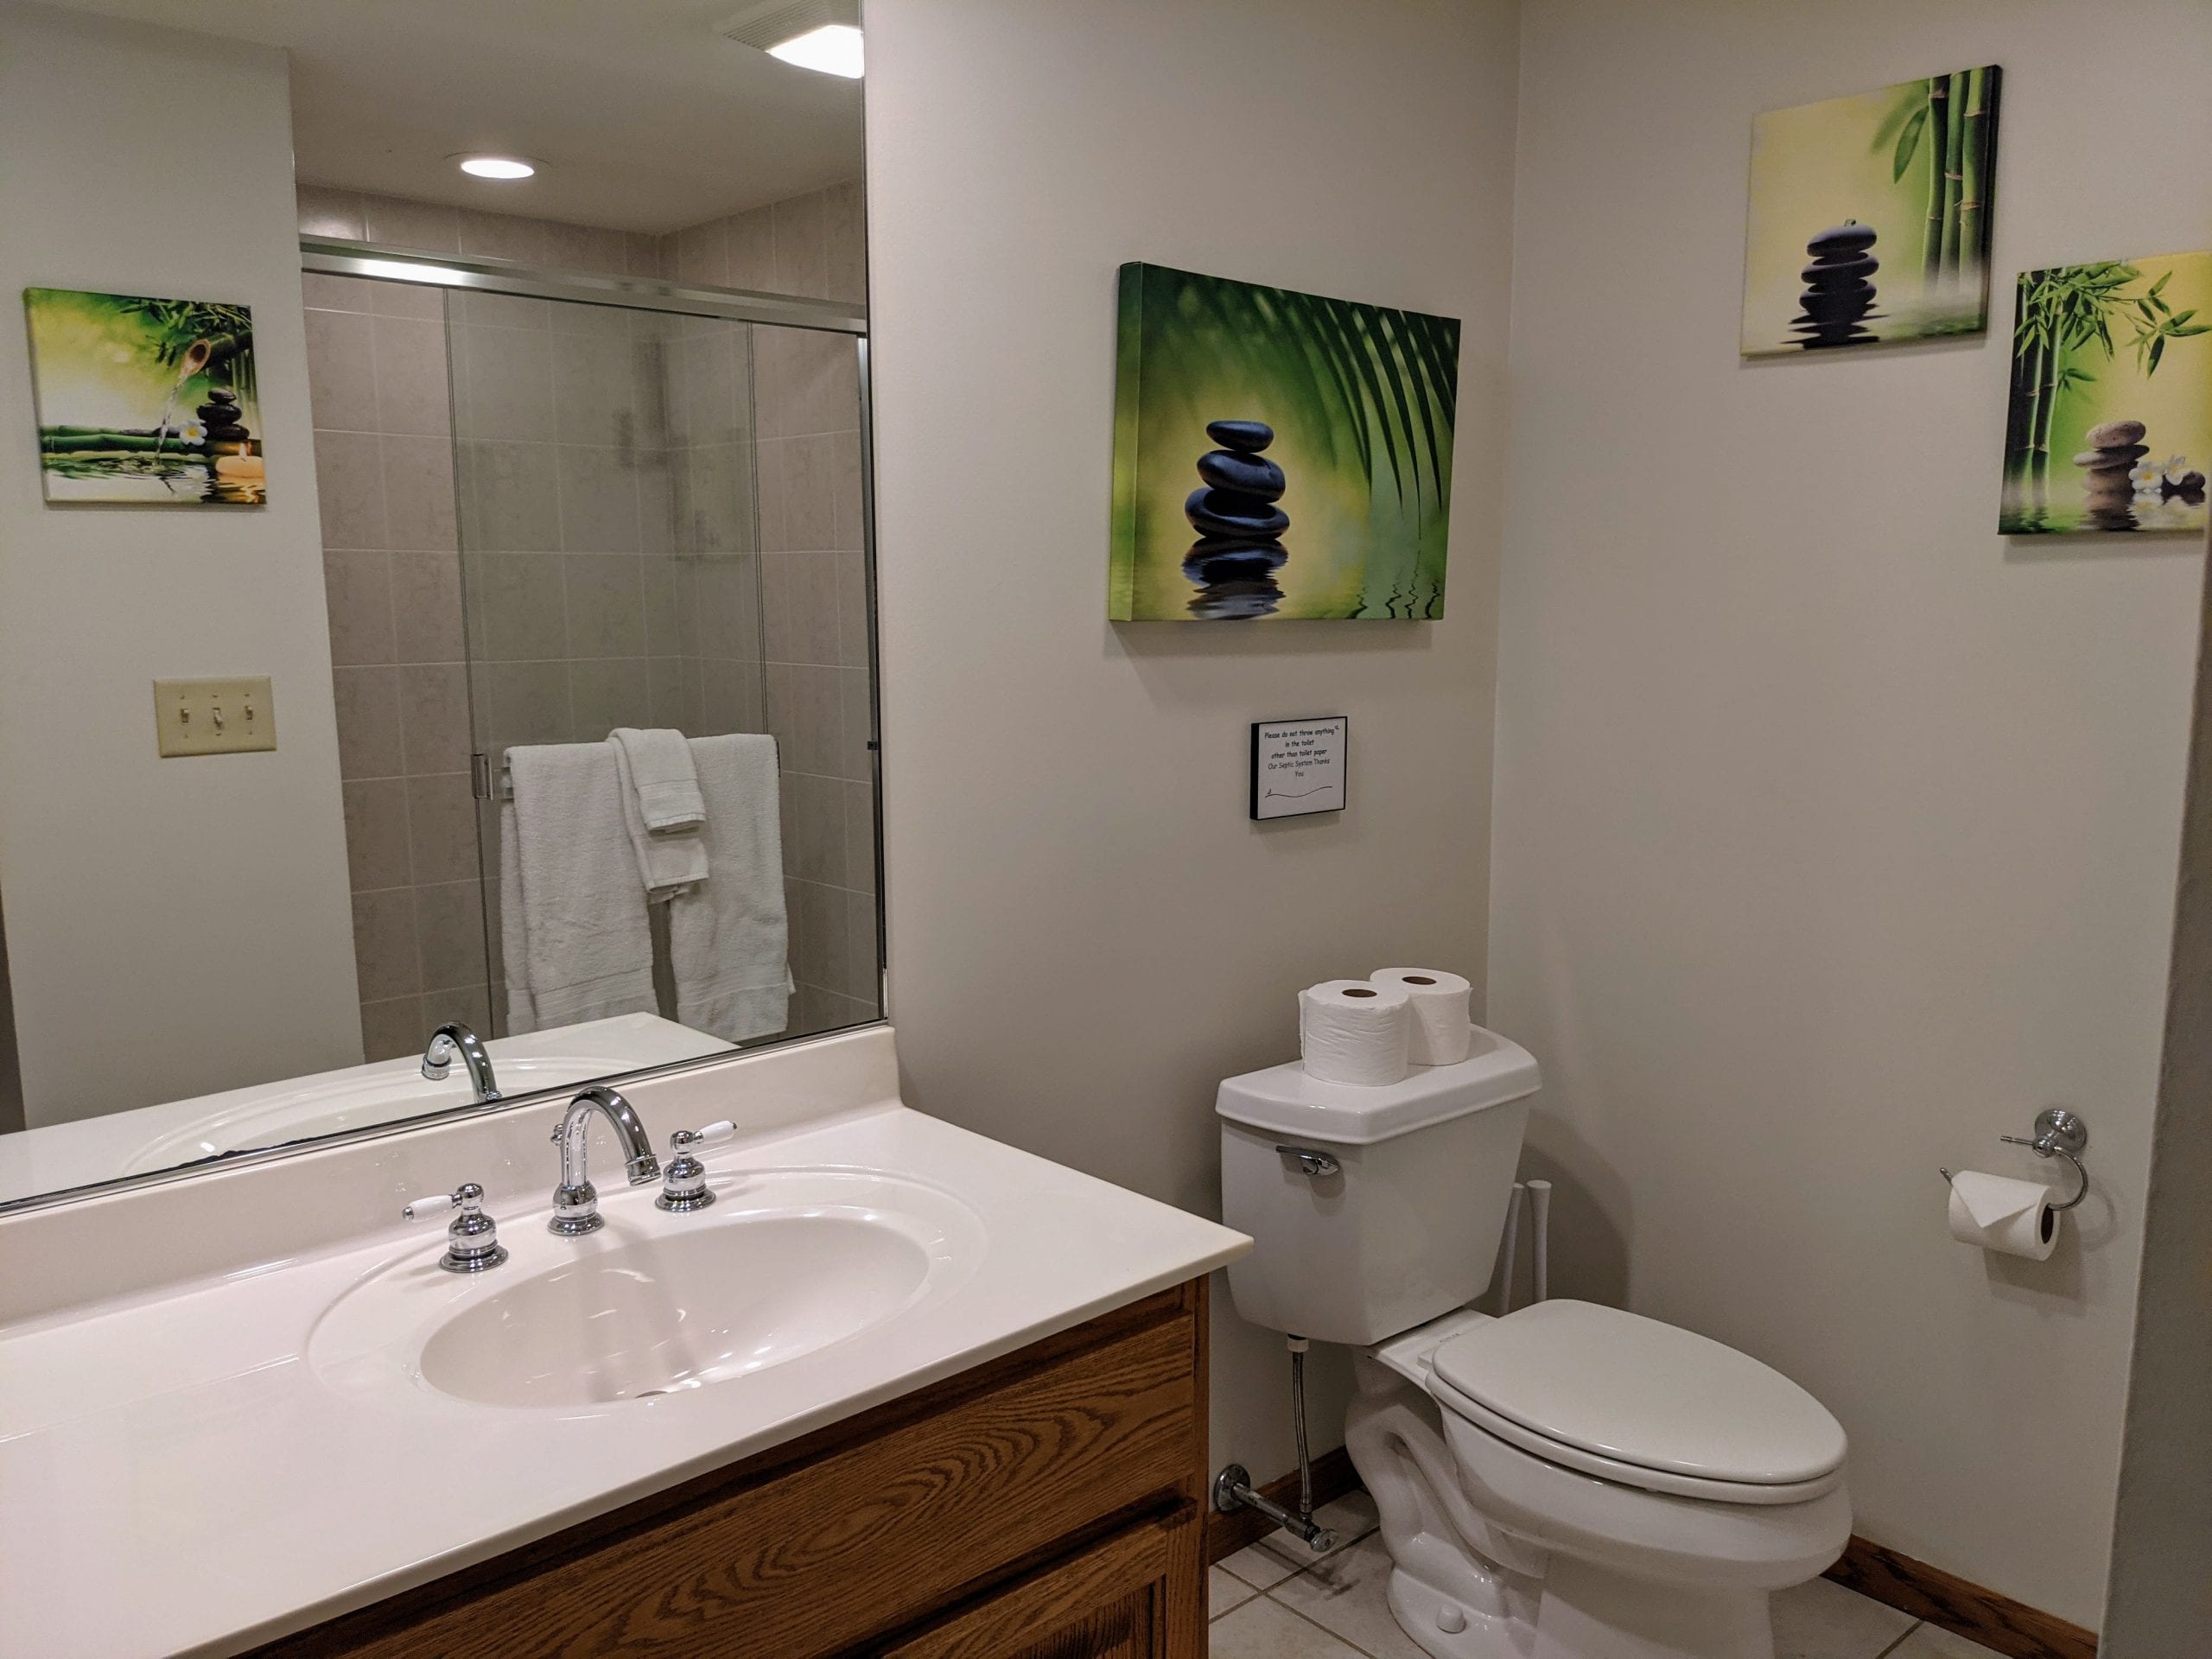 Lower level common area bathroom